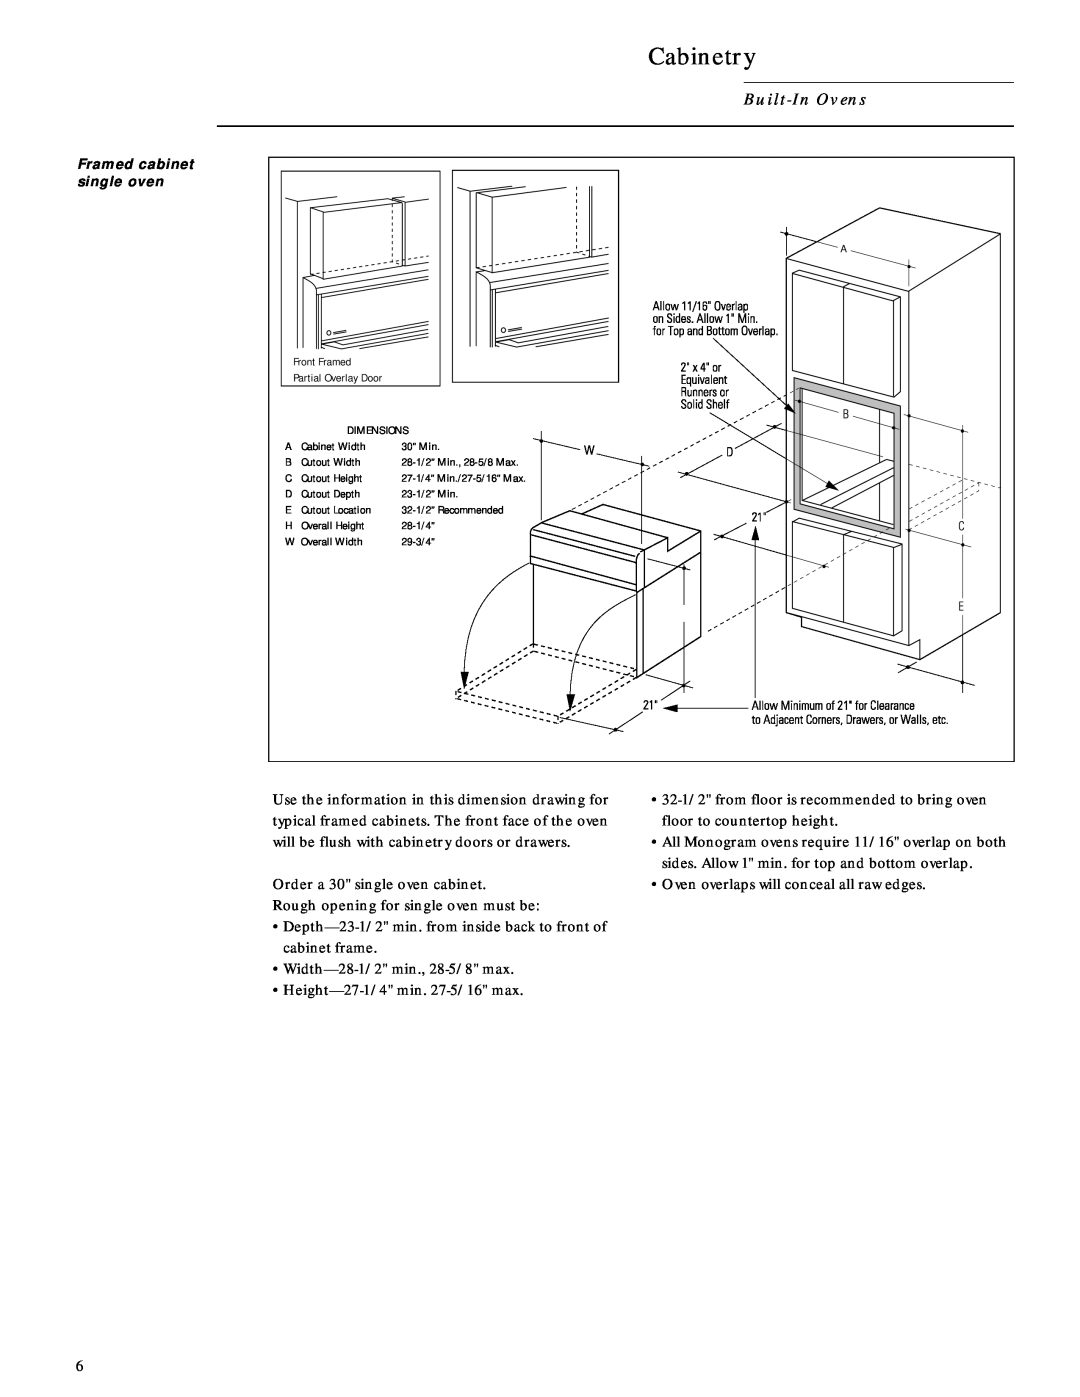 GE Monogram ZET757BW, ZET737WW, ZET757WW, ZET737BW Cabinetry, Built-InOvens, Framed cabinet single oven 